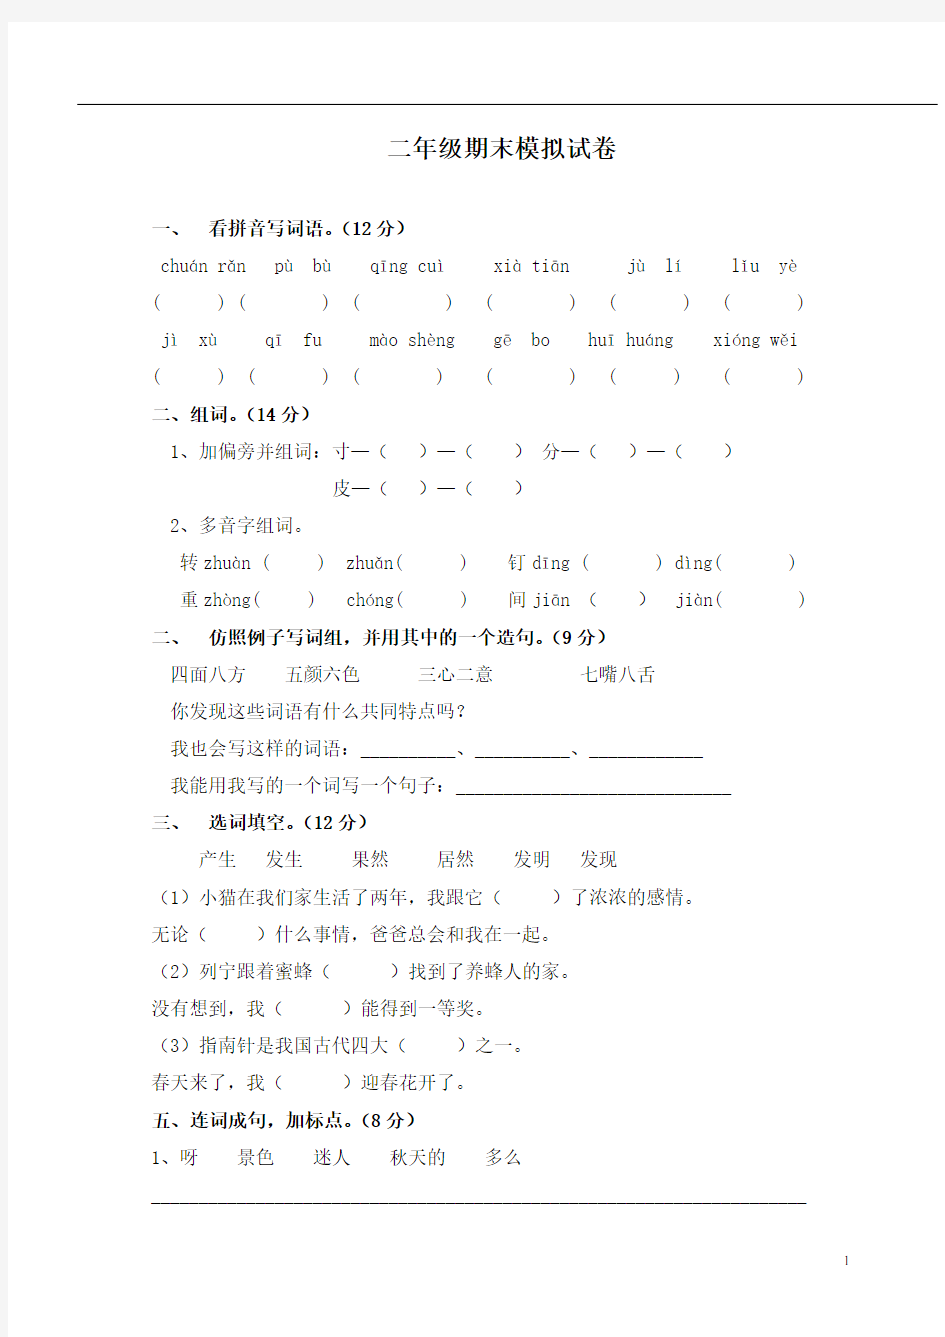 (完整)上海小学二年级语文试卷